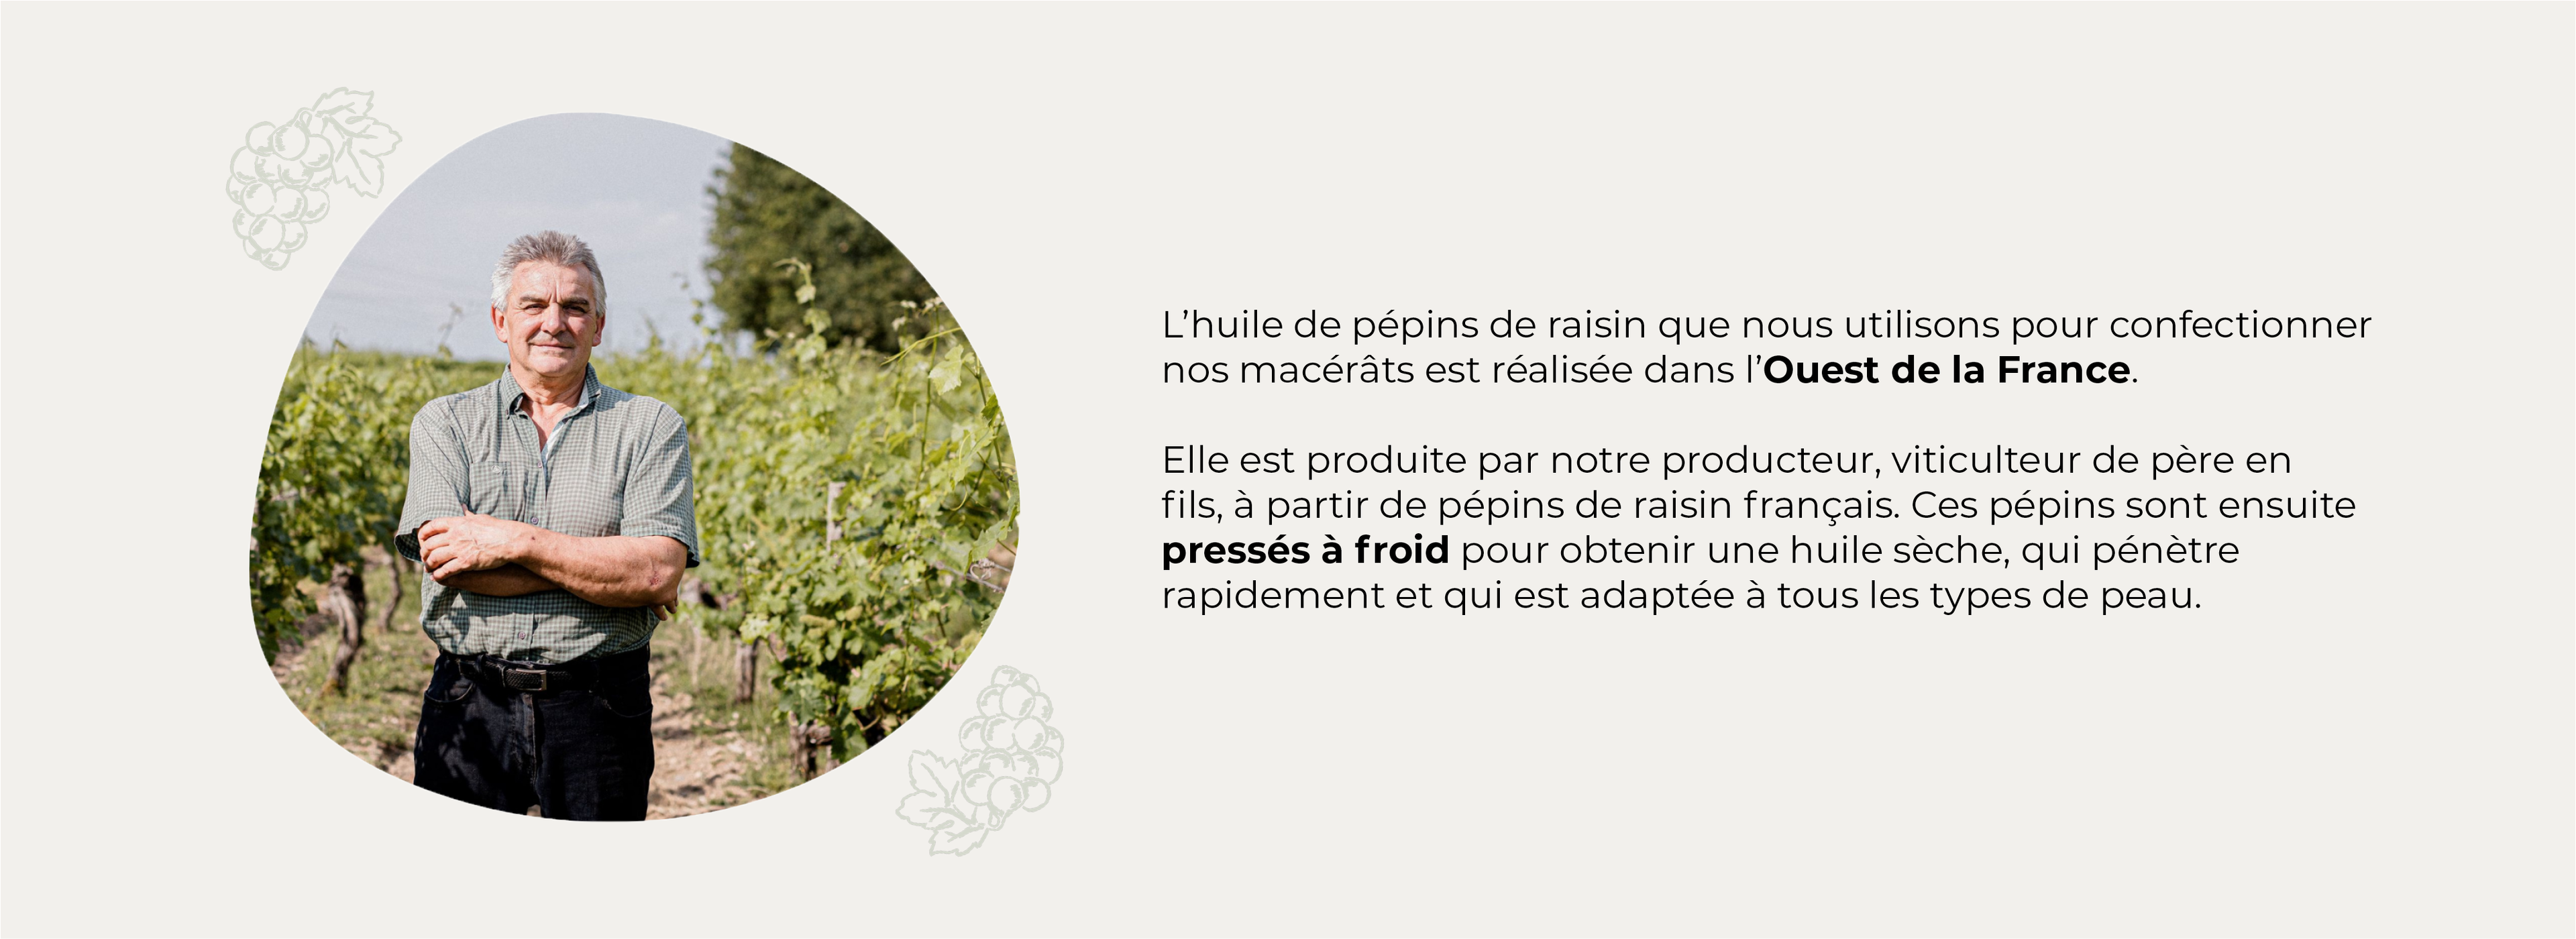 Une photo présentant un producteur français d'huile de pépins de raisin accompagné d'un texte explicatif.